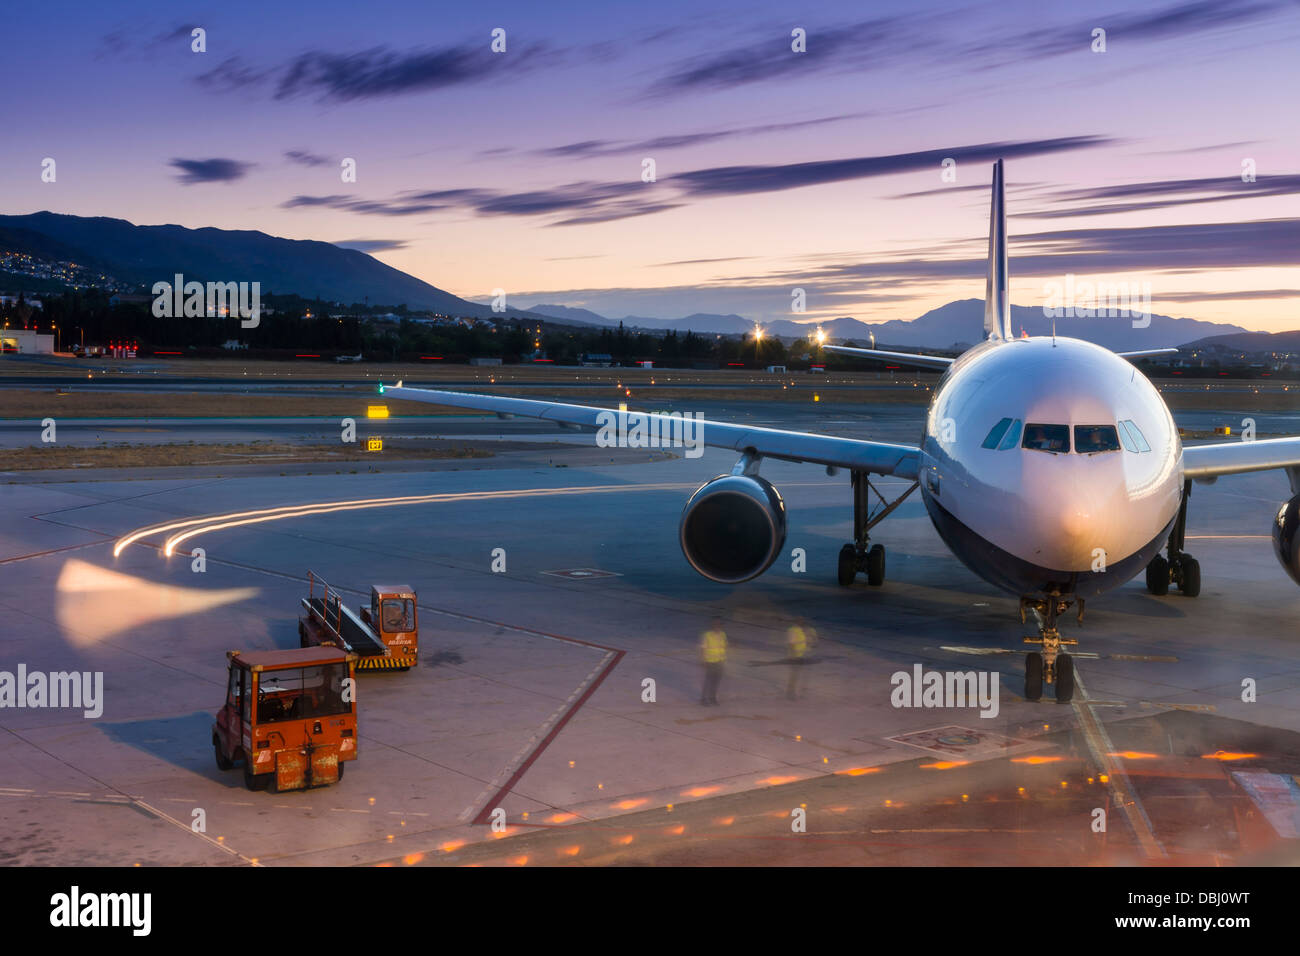 Une compagnie aérienne prépare c'est pour les avions décoller de l'aéroport de Malaga, dans le sud de l'Espagne. Banque D'Images